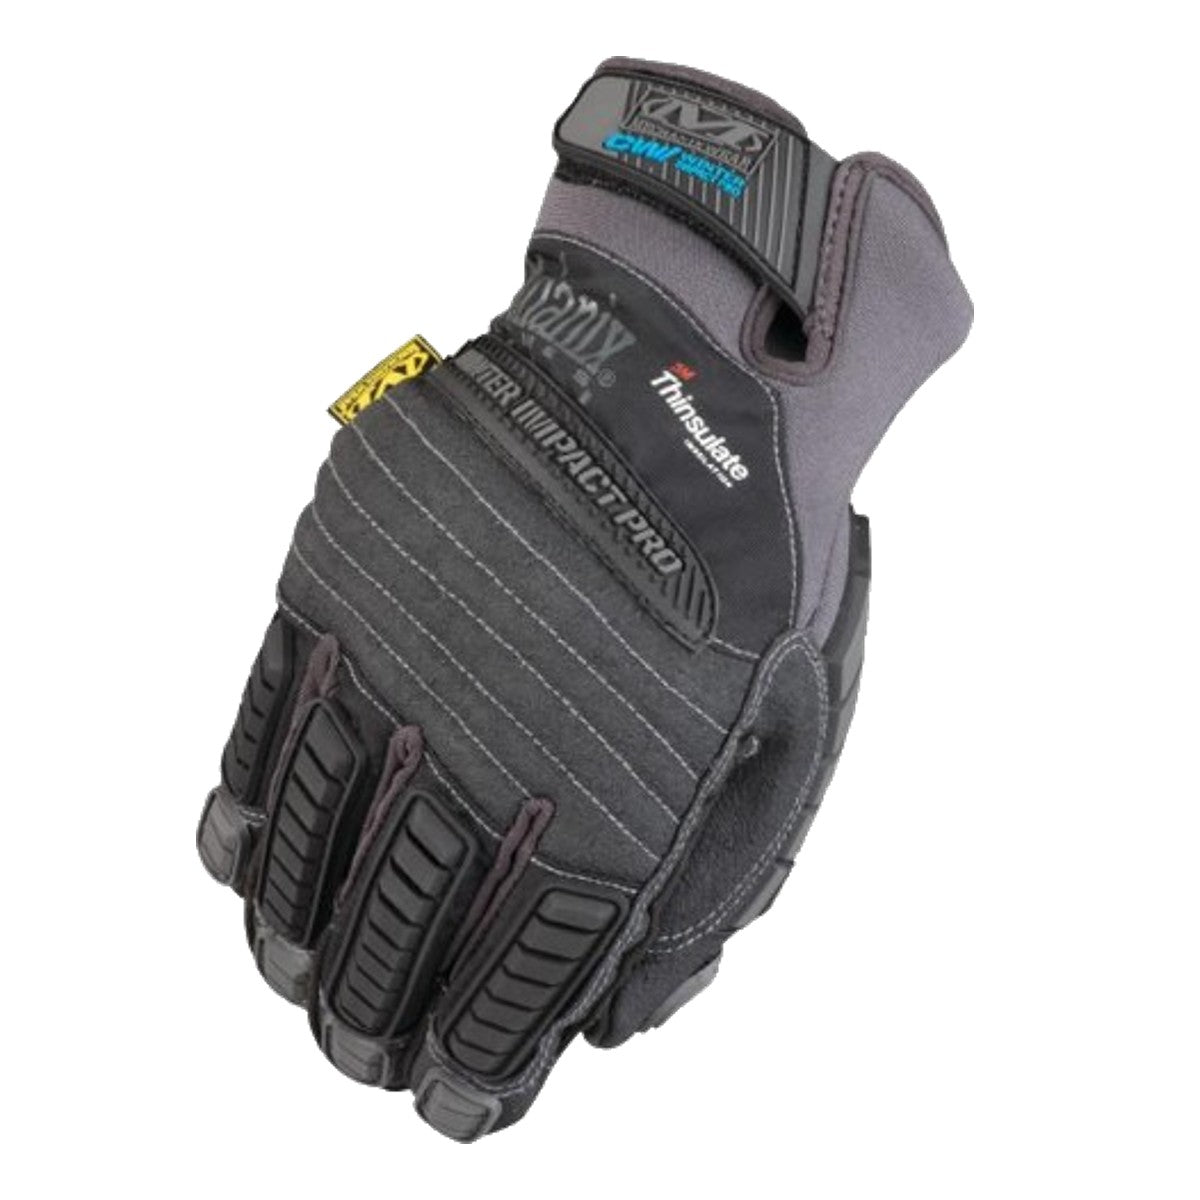 Mechanixwear Waterproof Winter Impact Pro Glove